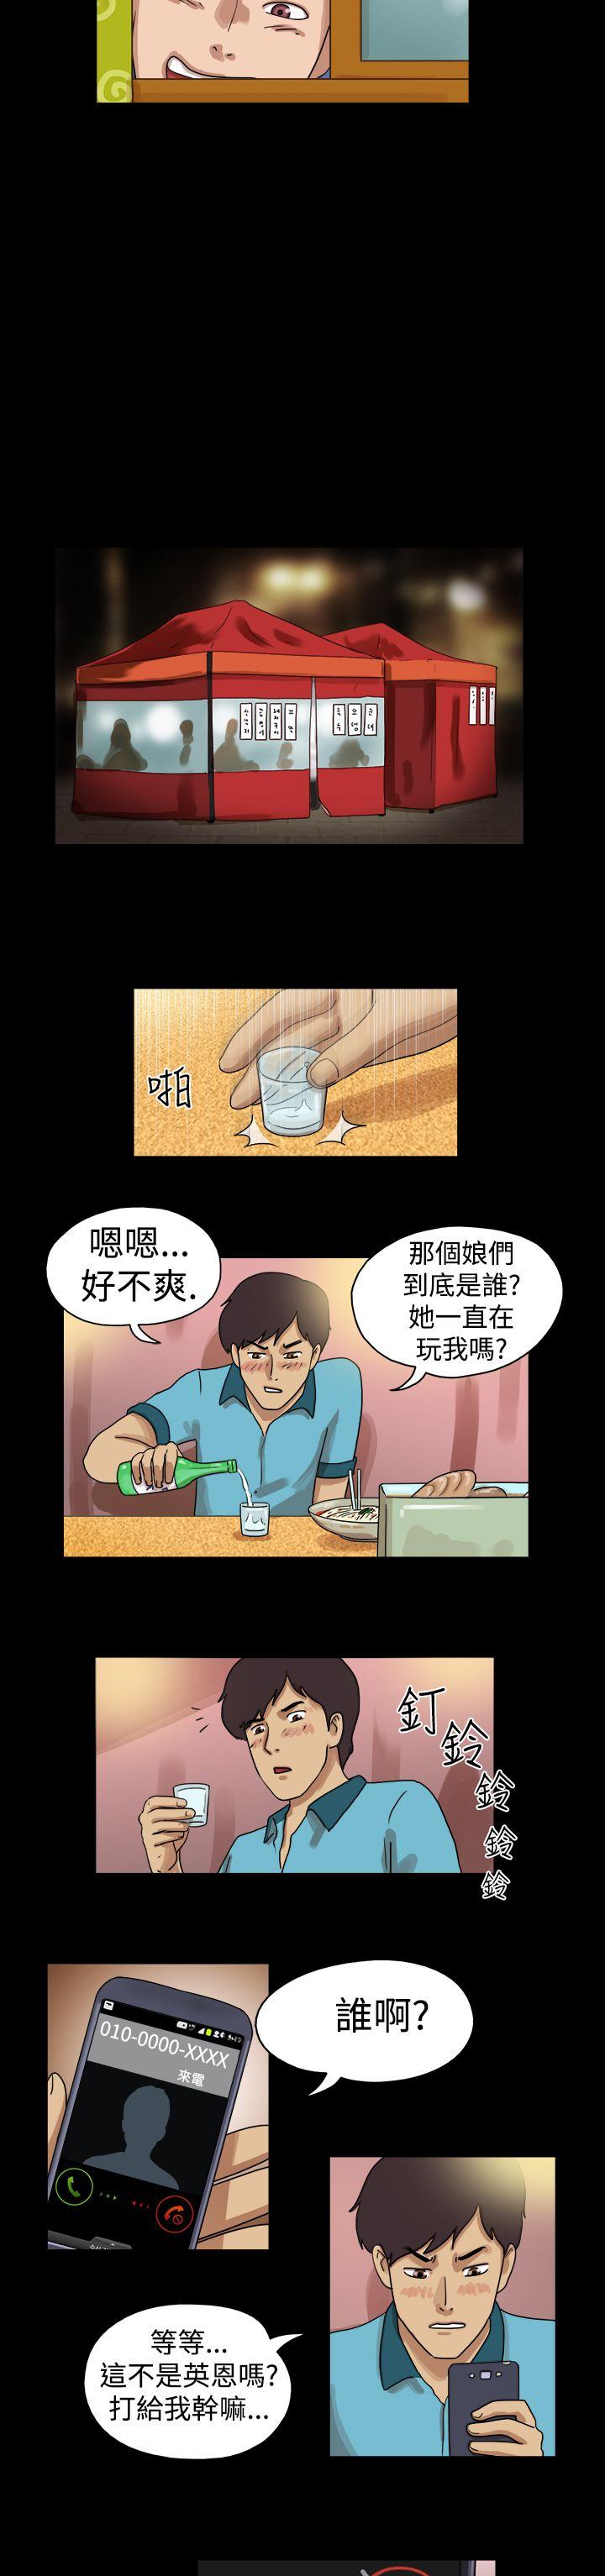 韩国污漫画 17種性幻想第一季 第20话 5